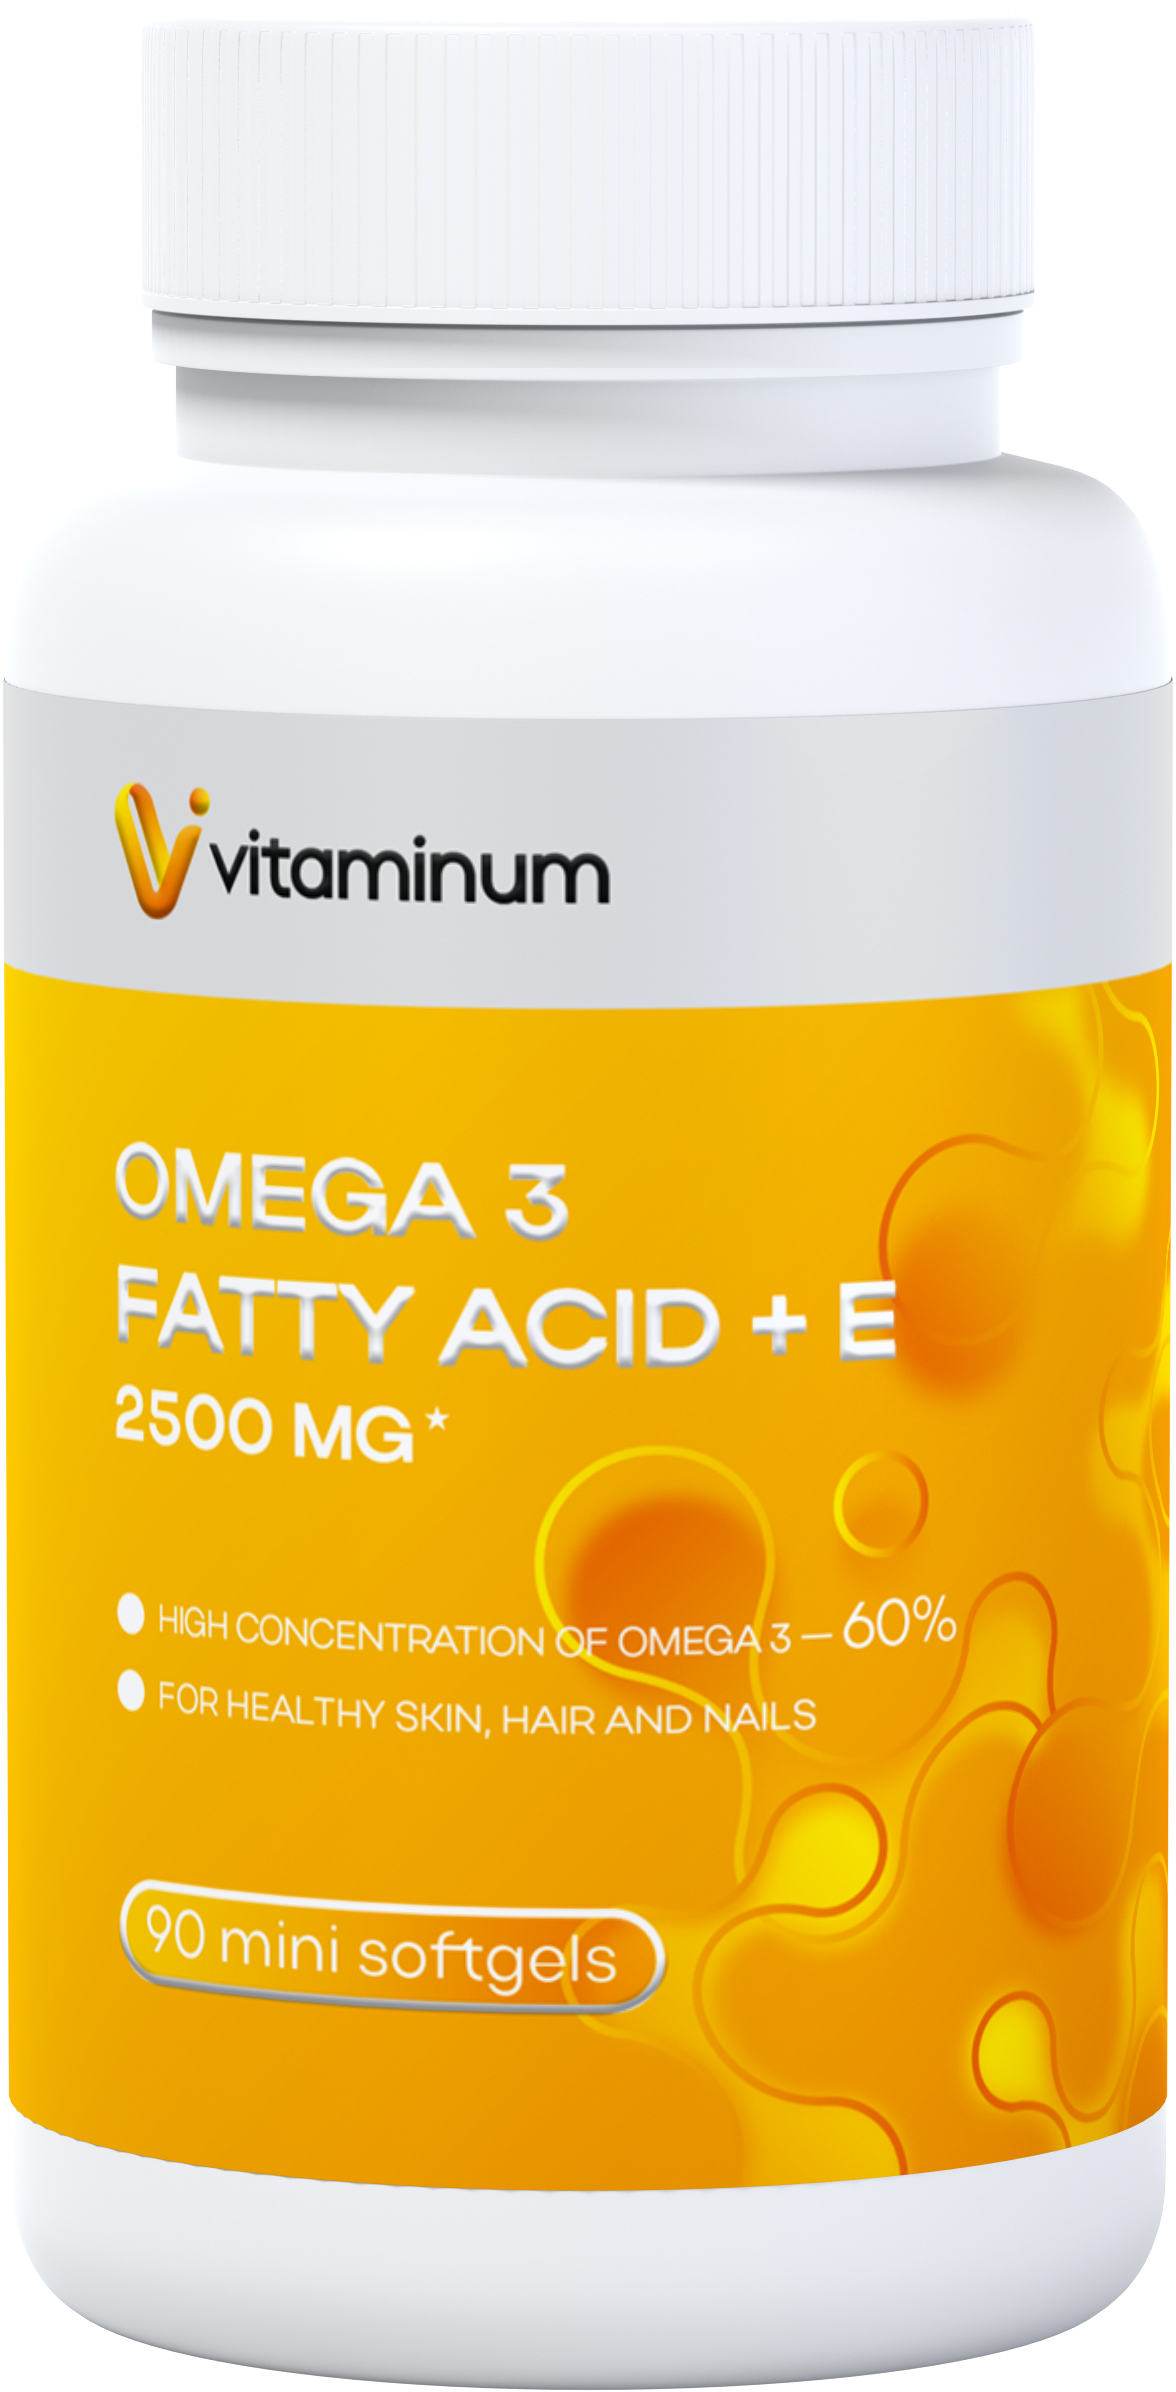  Vitaminum ОМЕГА 3 60% + витамин Е (2500 MG*) 90 капсул 700 мг   в Керчи